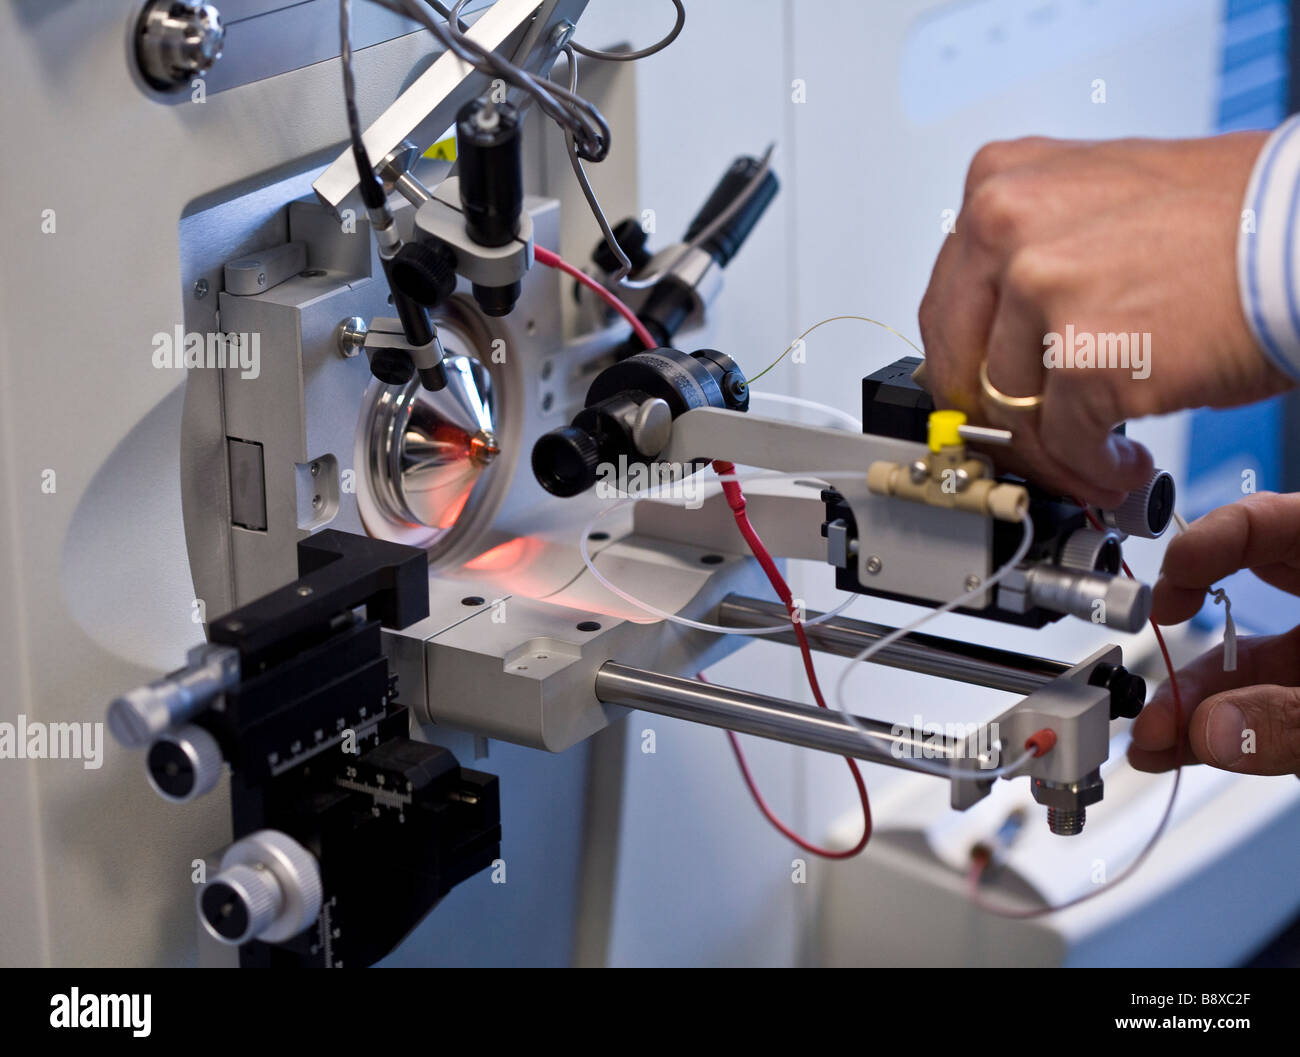 mass spectrometer, istituto di ricerche farmacologiche mario negri, milan, italy Stock Photo